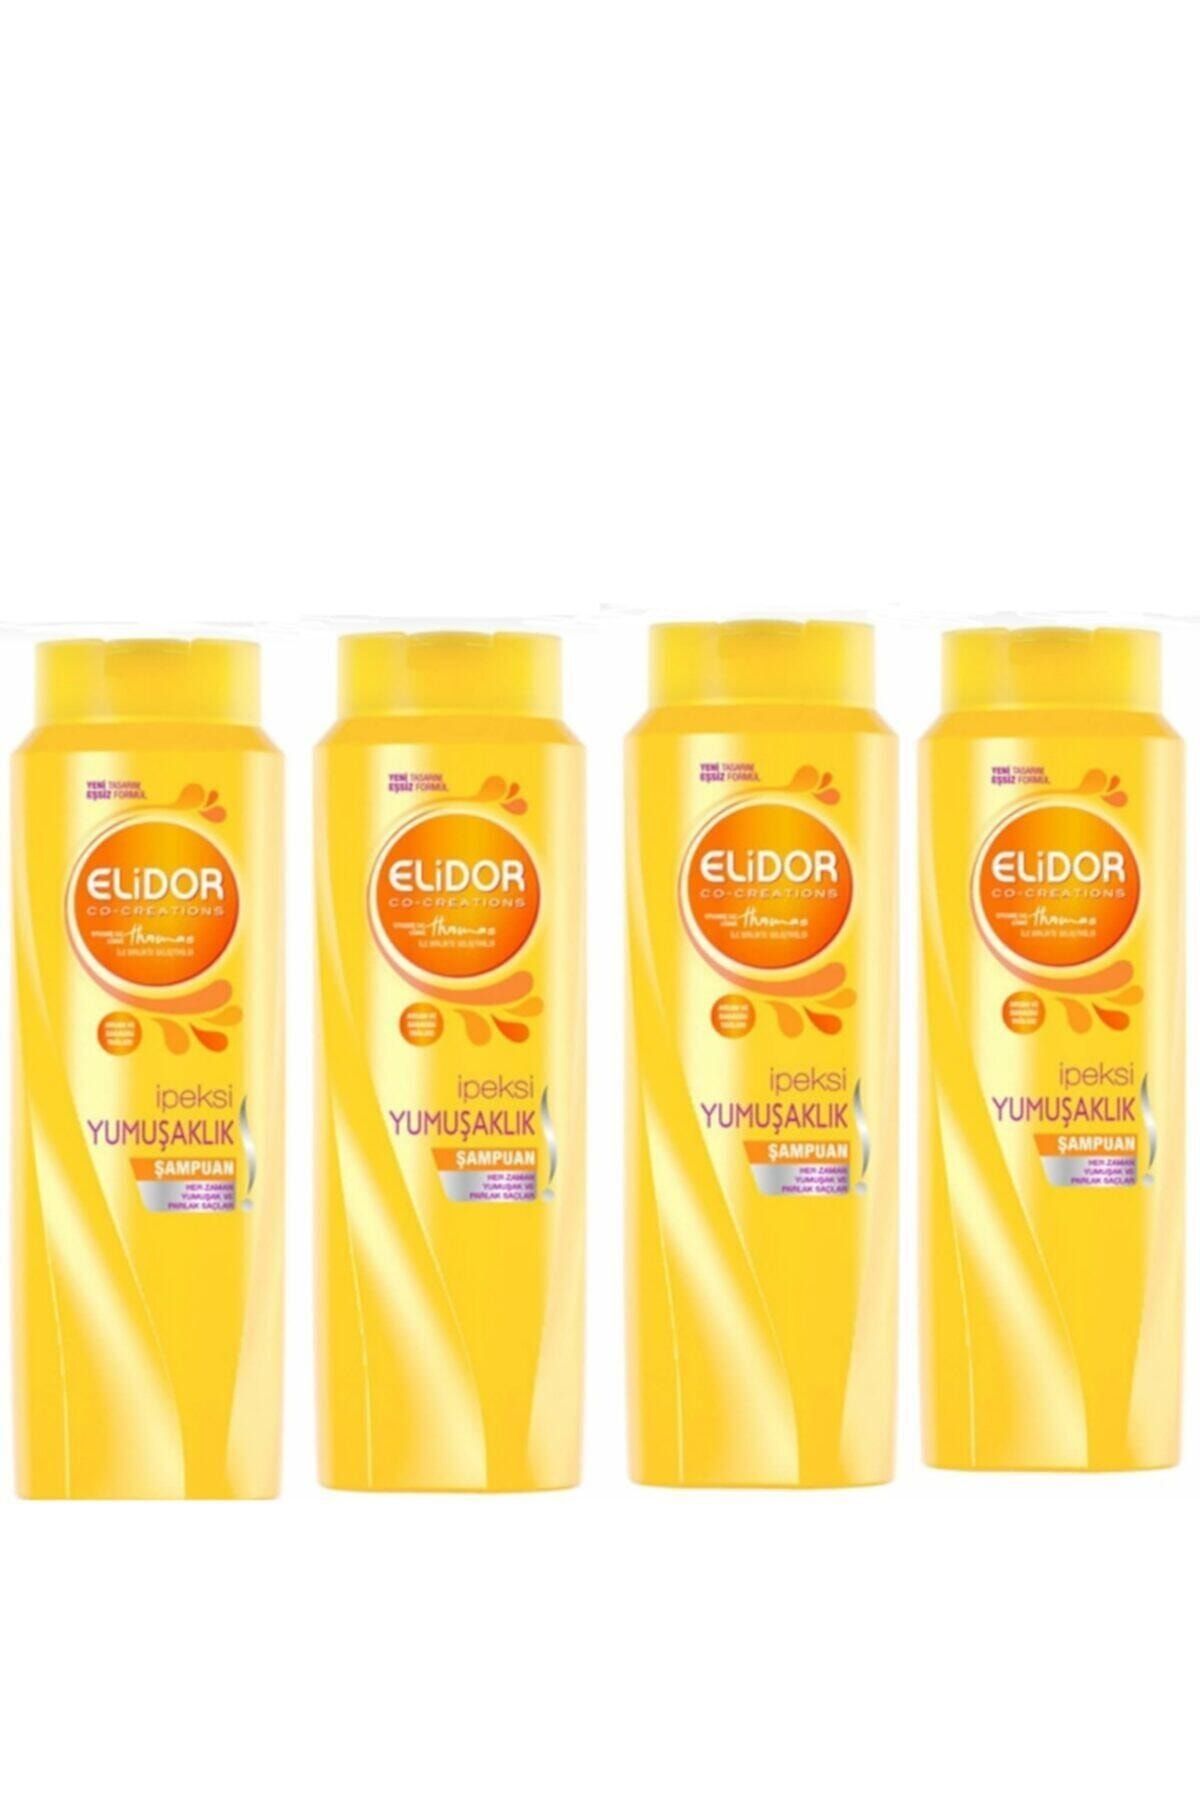 Elidor Ipeksi Yumuşaklık Saç Bakım Şampuanı 500 Ml X 4 Set